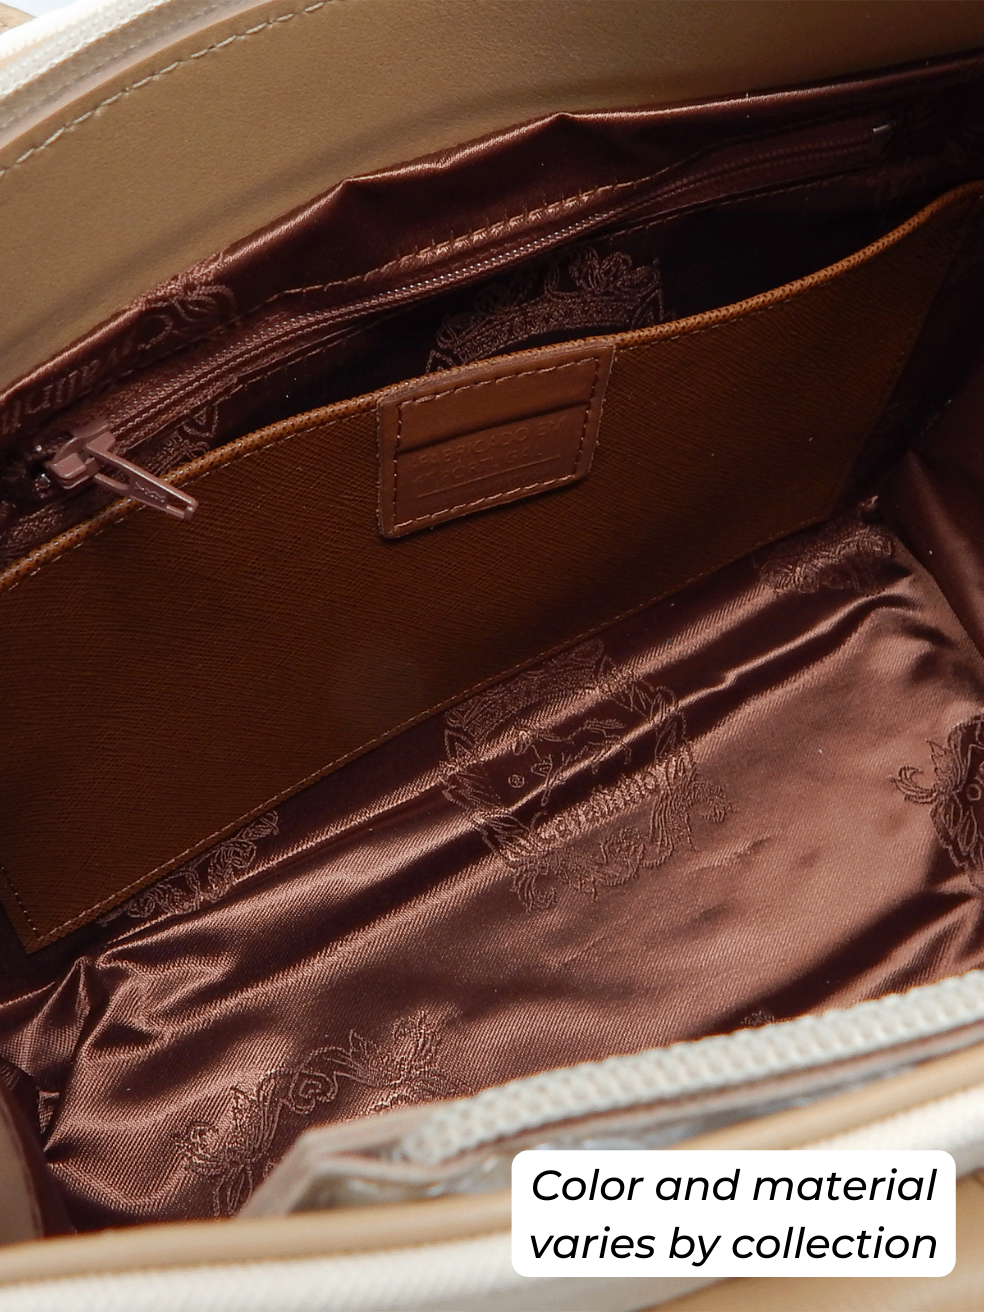 Cavalinho Signature Handbag SKU 18740524.31 #color_sand / beige